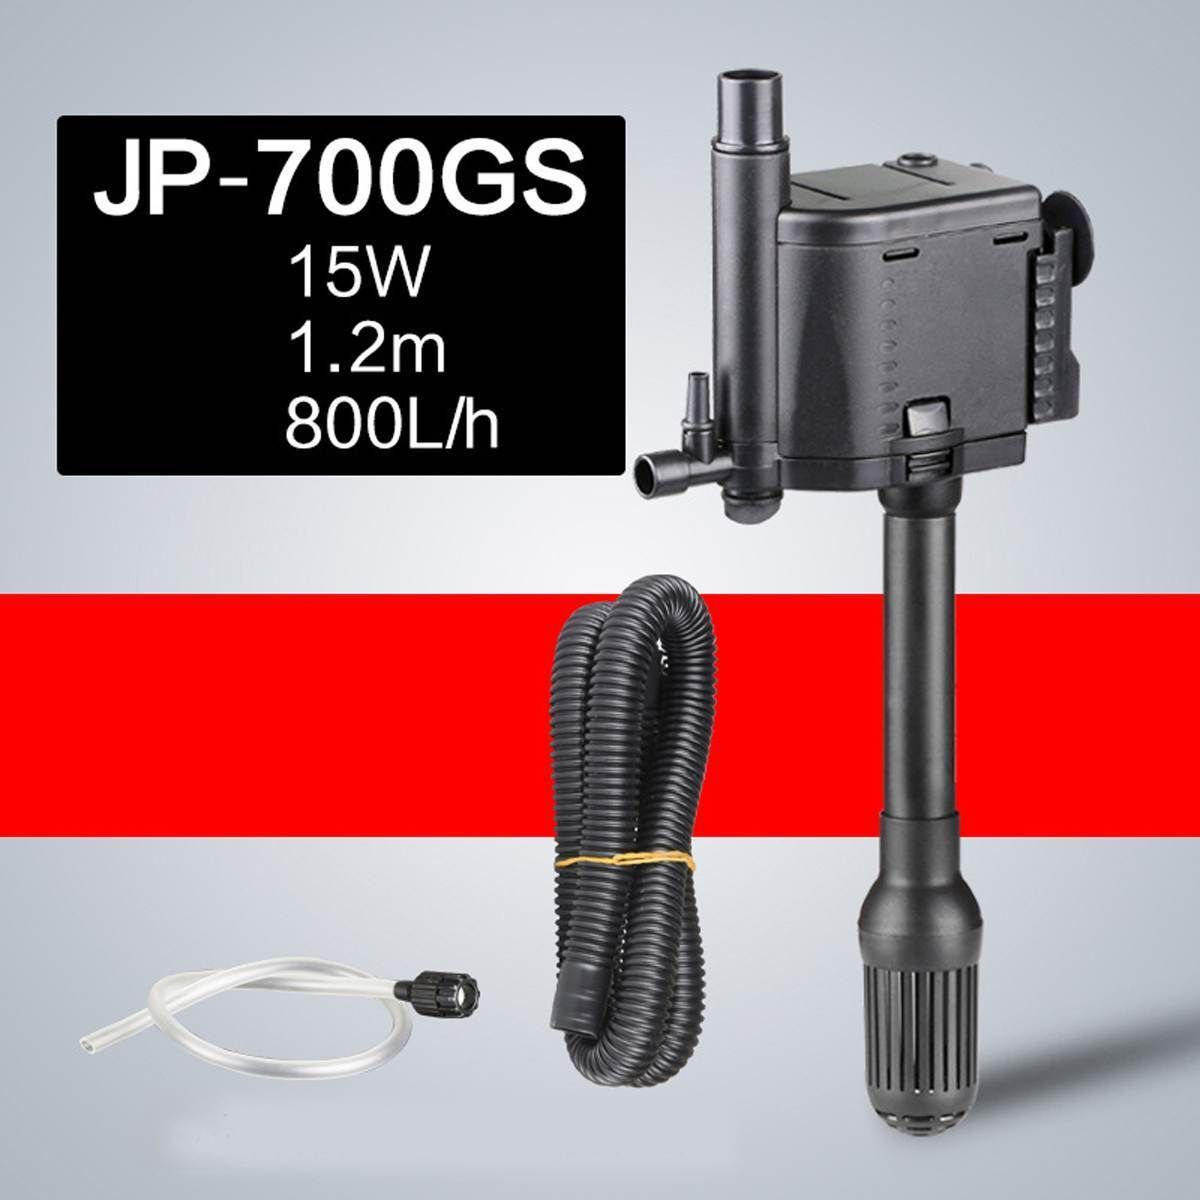 Jp-700gs